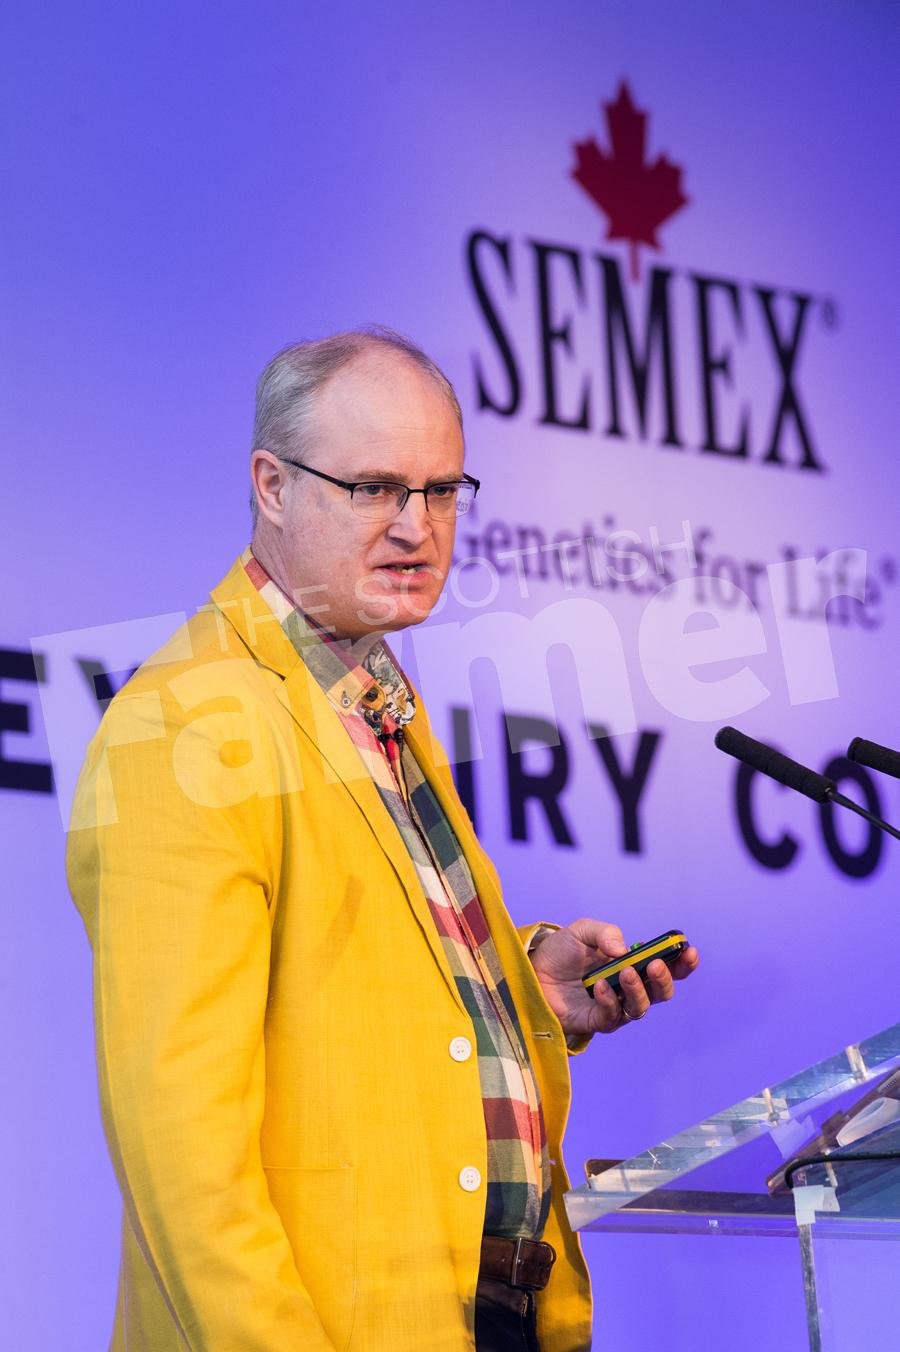 Speaking at SEMEX, Chris Walkland. Ref: RH140119035.